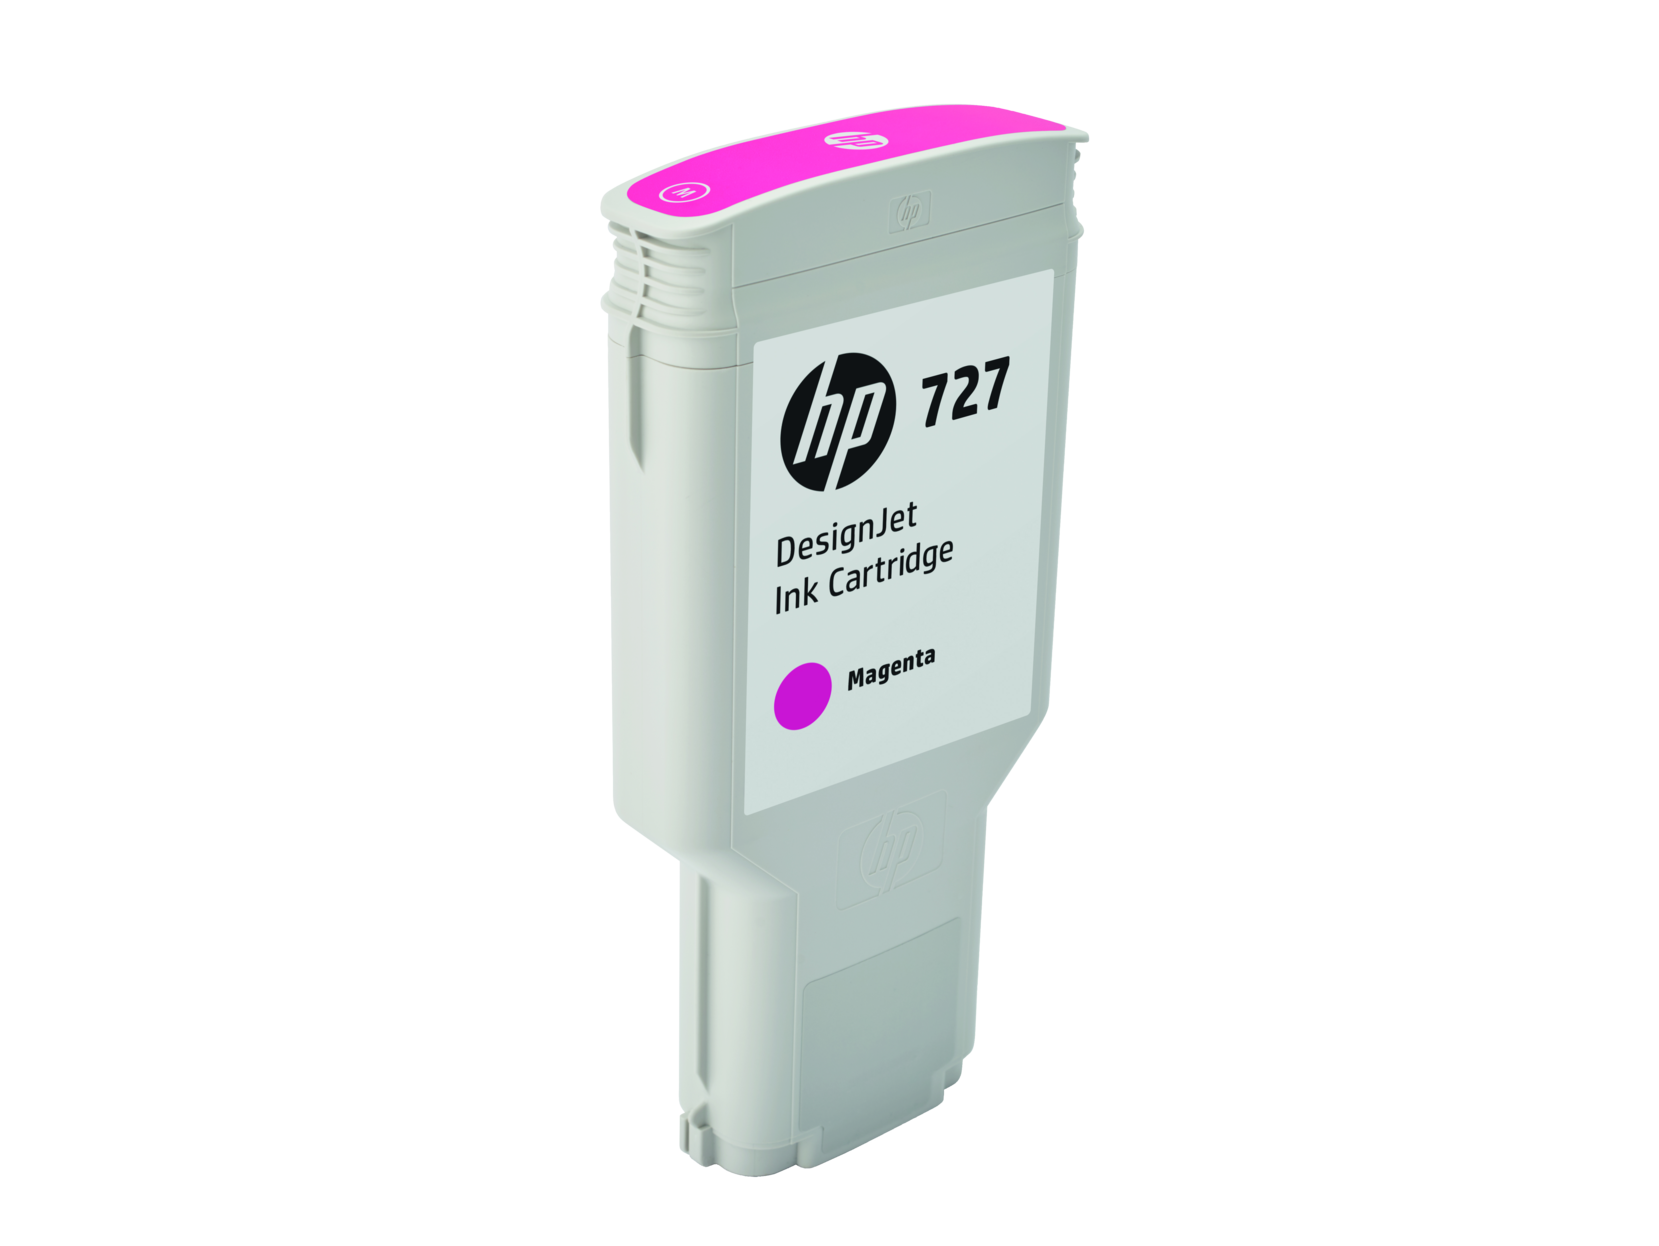 Картридж для печати HP Картридж HP 727 F9J77A вид печати струйный, цвет Пурпурный, емкость 300мл.